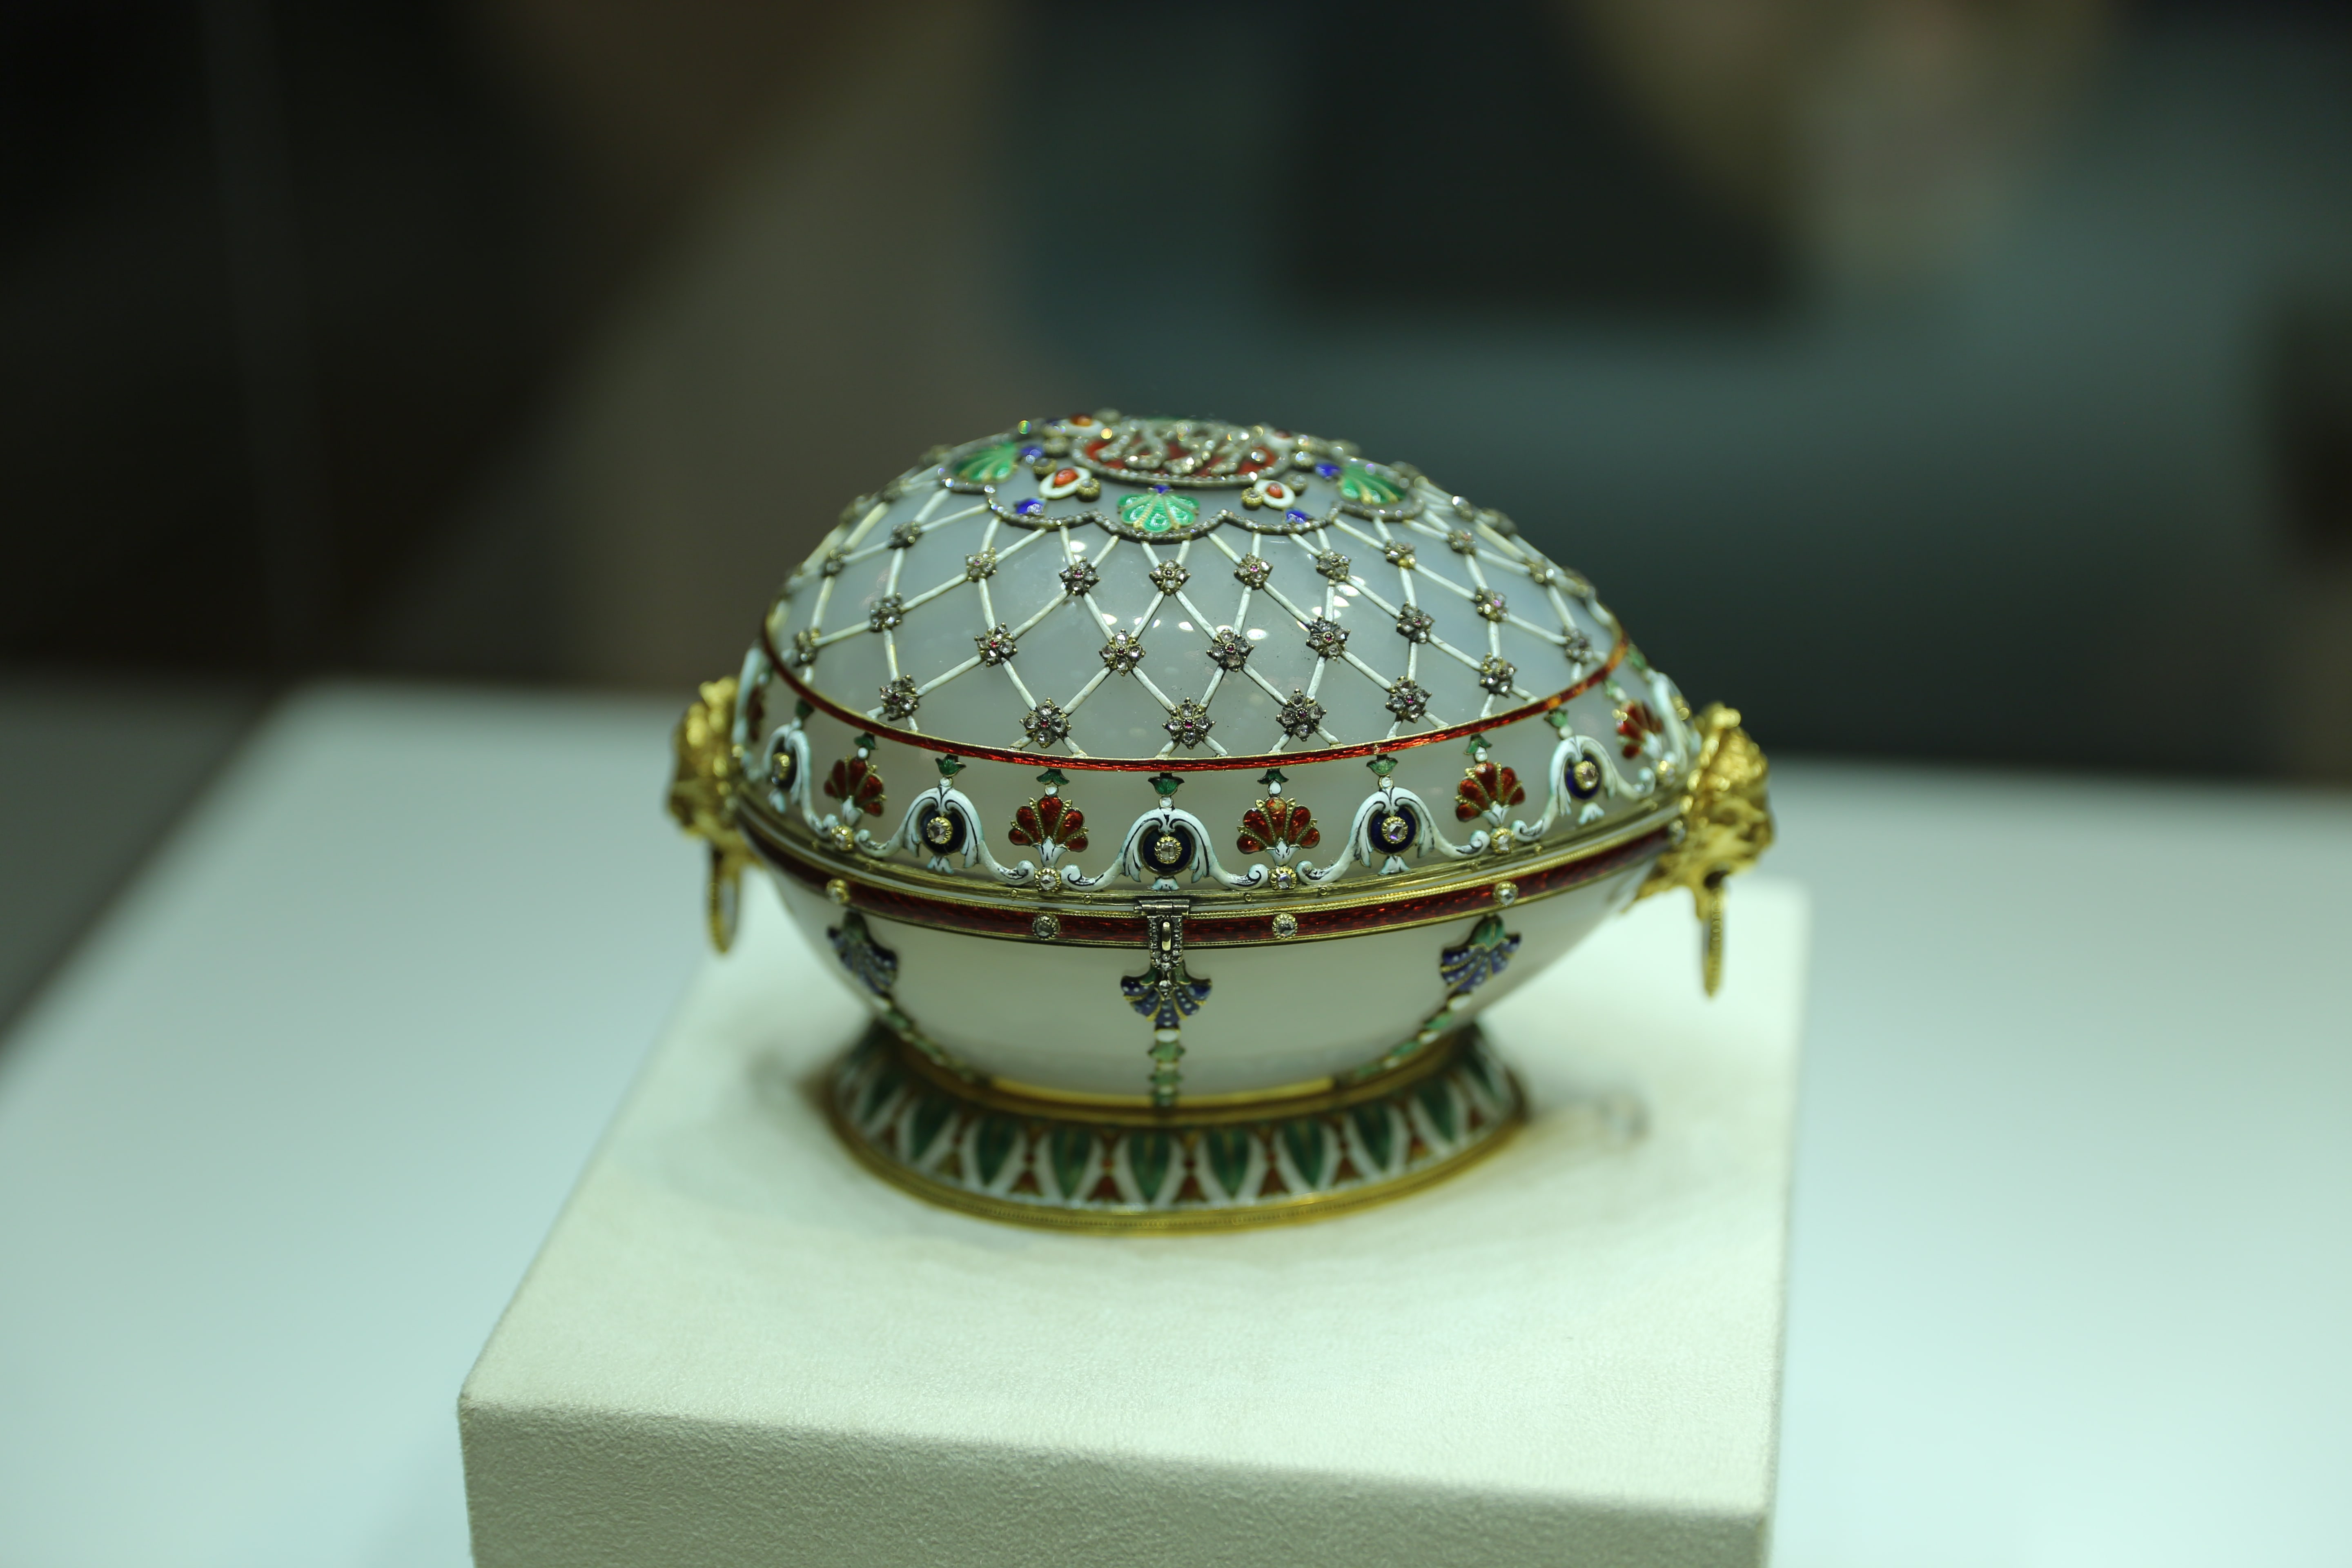 Vyzdobené vajíčko z dielne Fabergeho. Zdroj: archív klienta CK